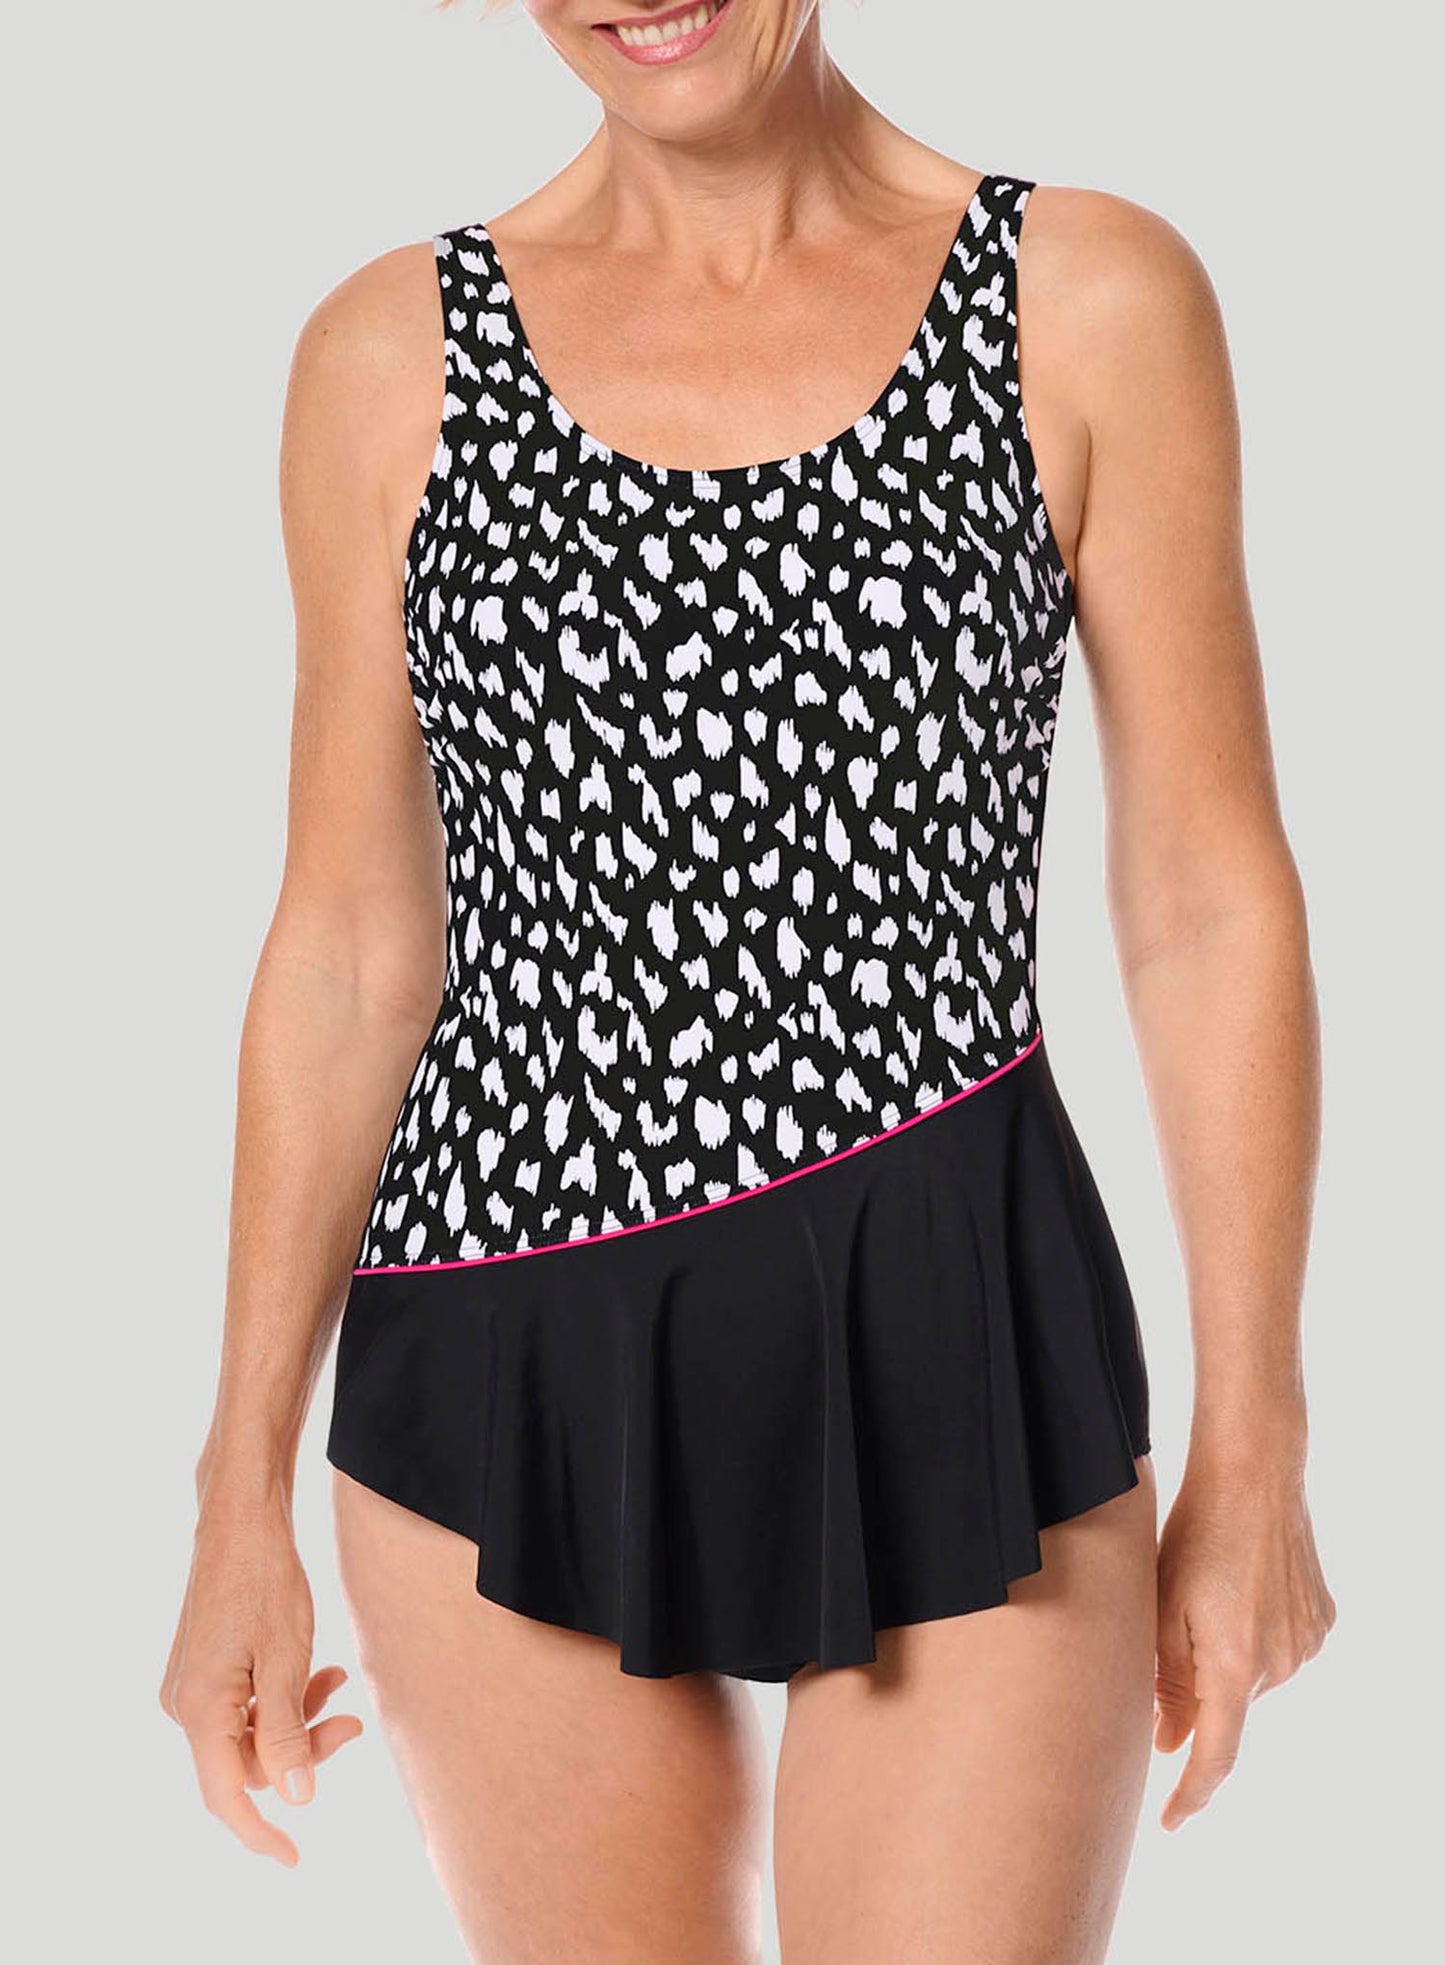 Amoena Swimwear: Manila Mastectomy Skirted One Piece Black White